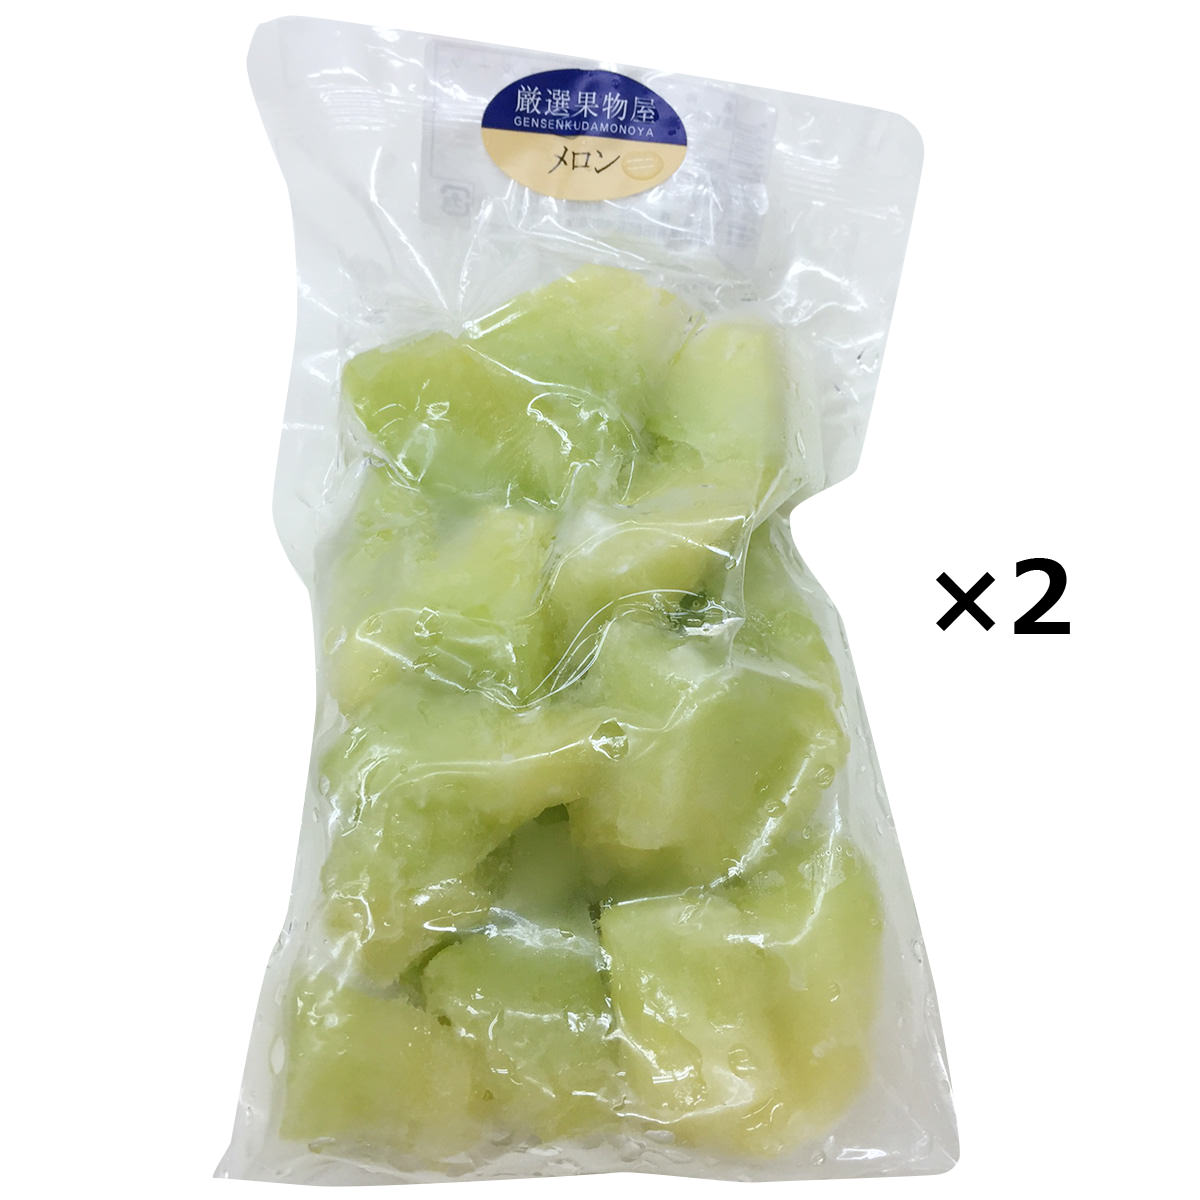 冷凍フルーツ 国産メロン 2袋 メロン 国産 冷凍 果物 カット済み 使いやすい カットフルーツ 一口サイ..